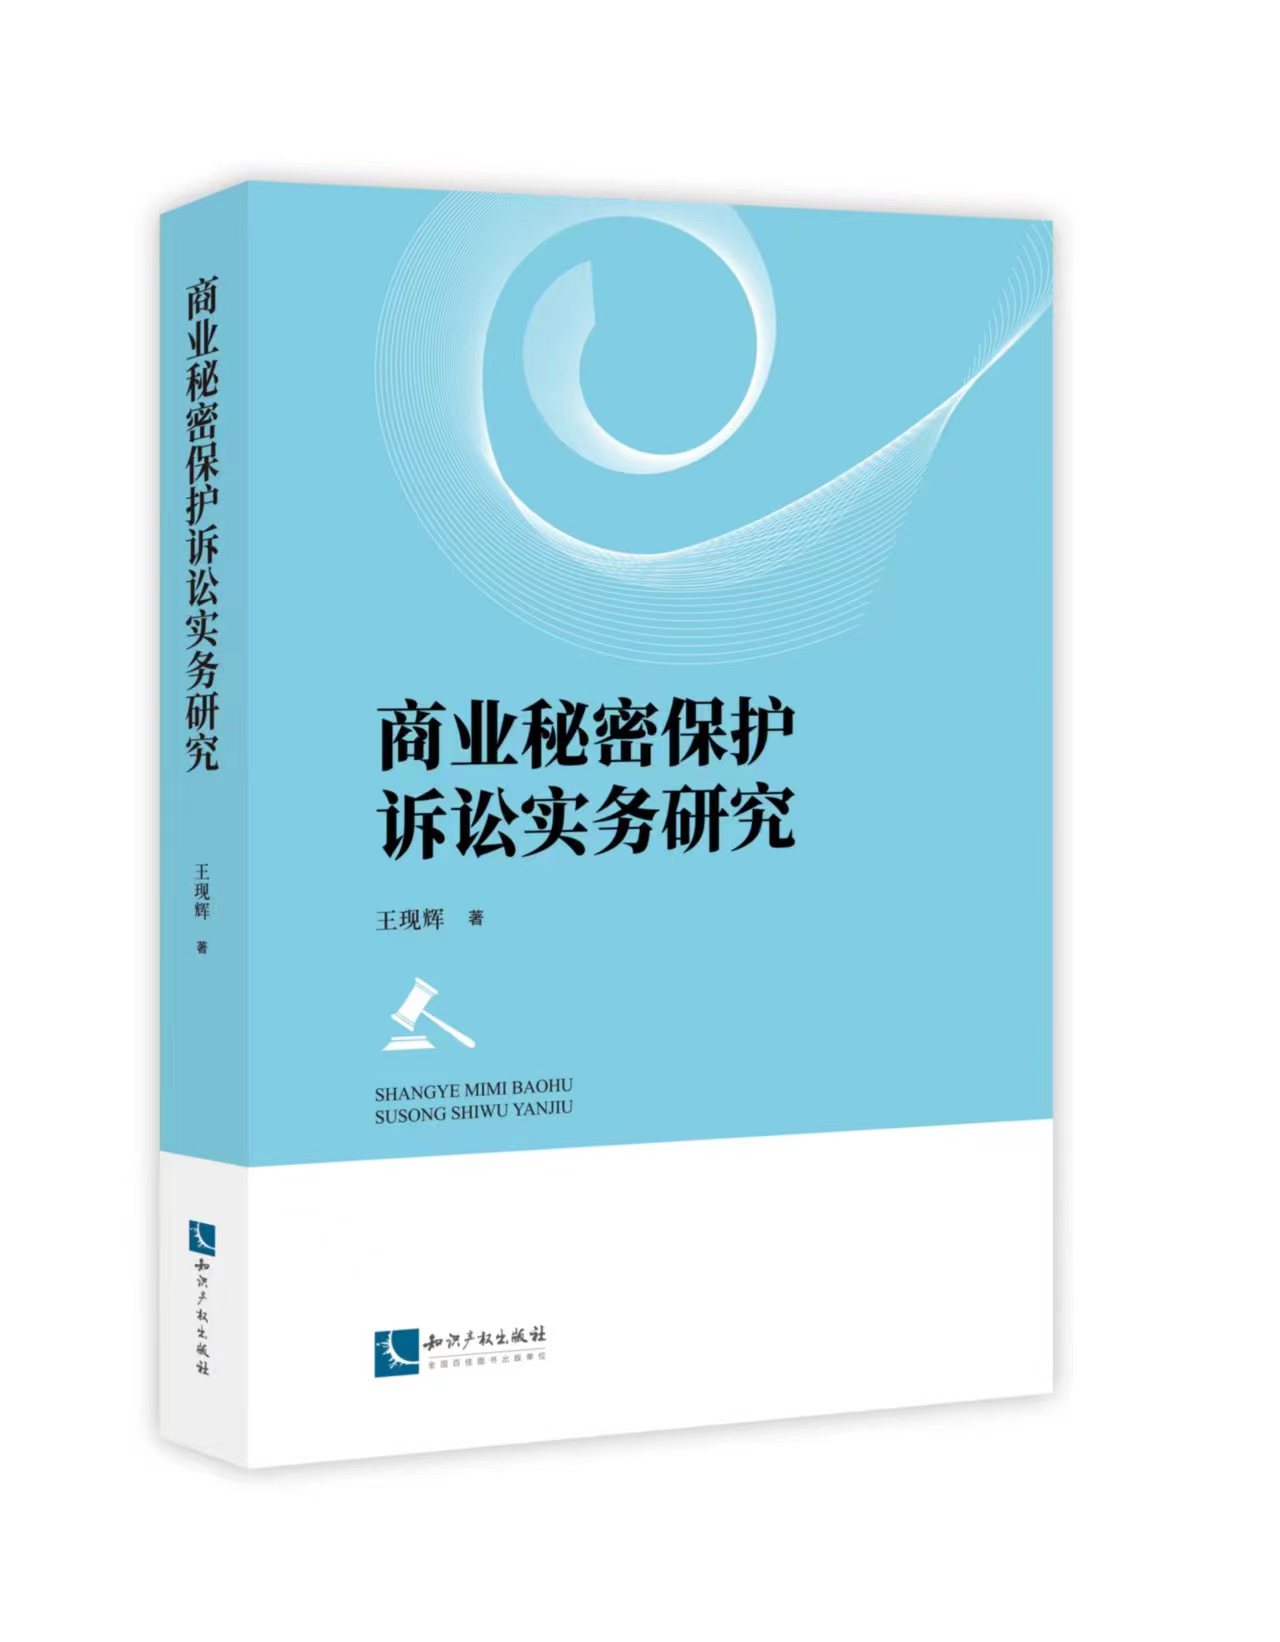 王现辉律师新著《商业秘密保护诉讼实务研究》一书出版发行